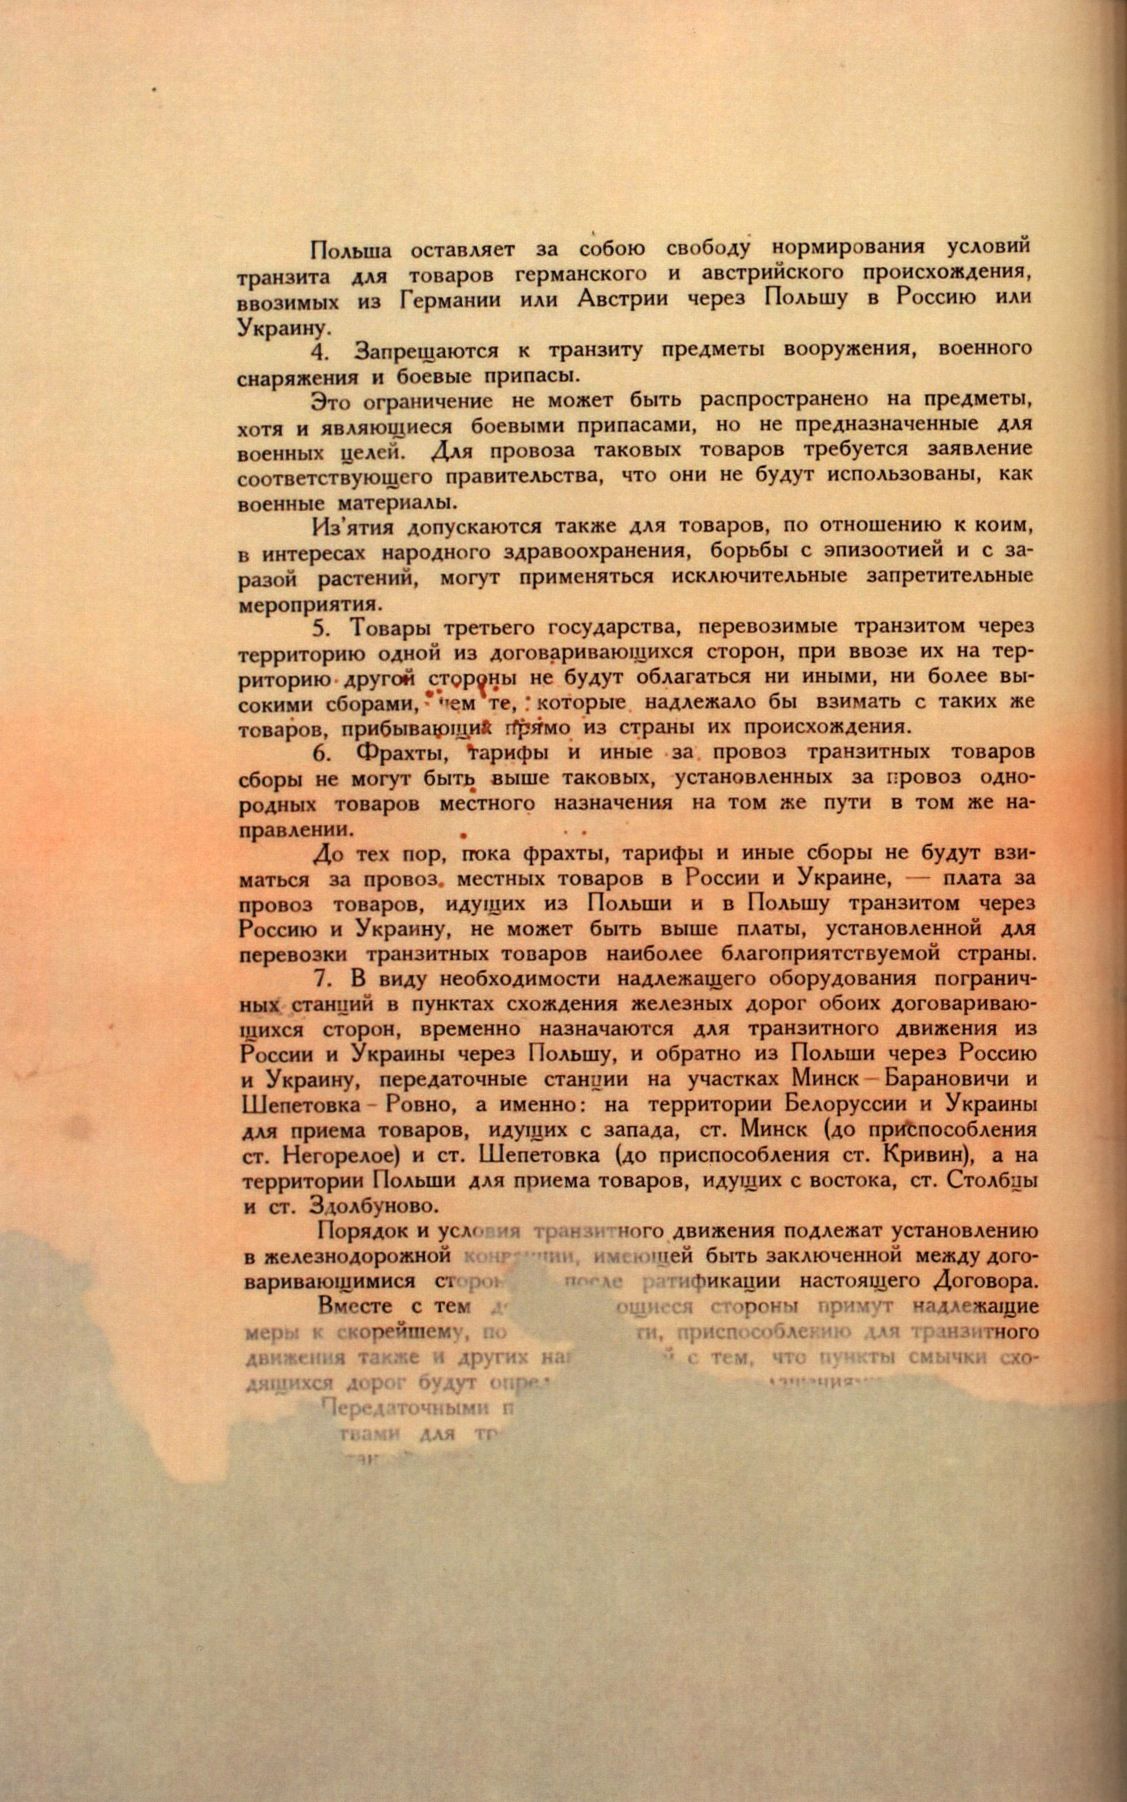 Traktat Pokoju między Polską a Rosją i Ukrainą podpisany w Rydze dnia 18 marca 1921 roku, s. 86, MSZ, sygn. 6739.